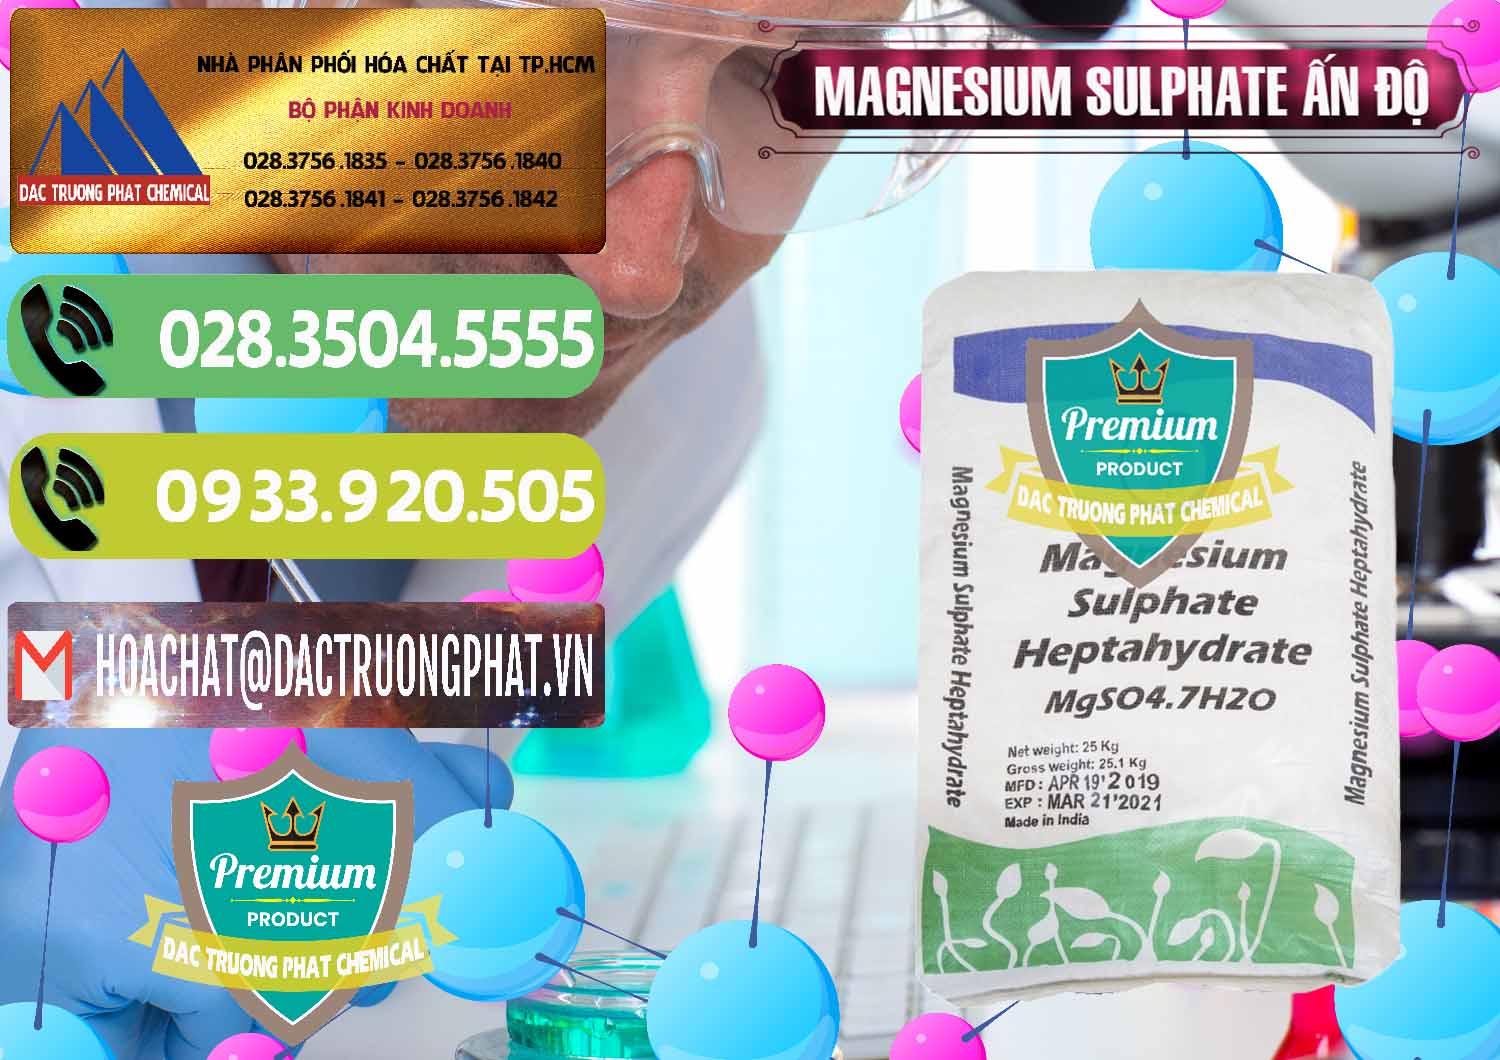 Đơn vị cung ứng & bán MGSO4.7H2O – Magnesium Sulphate Heptahydrate Ấn Độ India - 0362 - Phân phối ( kinh doanh ) hóa chất tại TP.HCM - hoachatmientay.vn